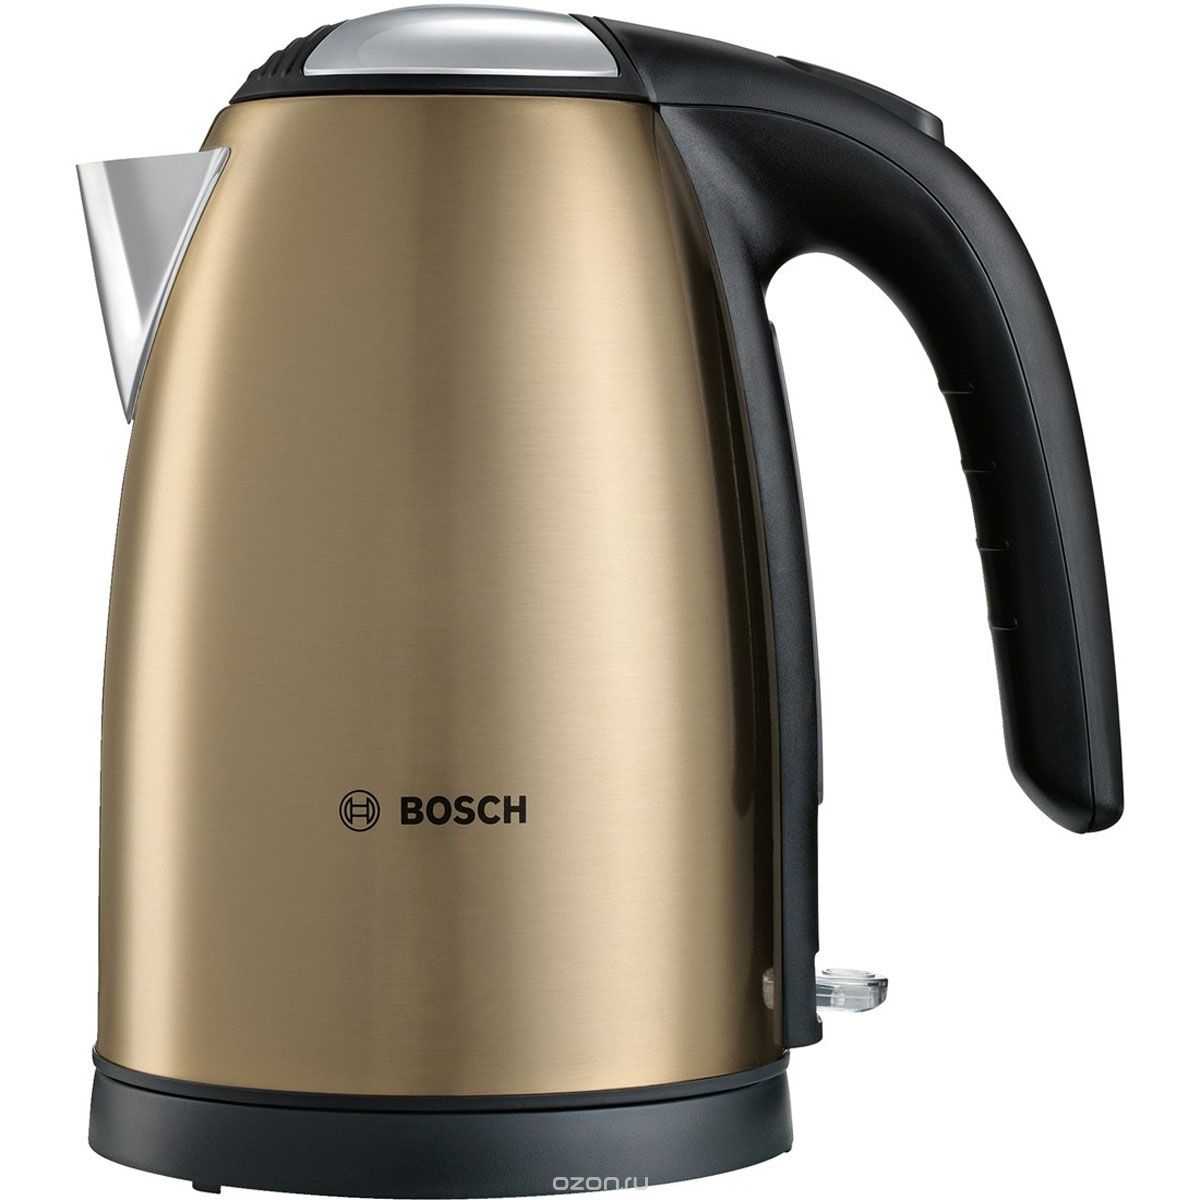   Bosch TWK 7808, Gold